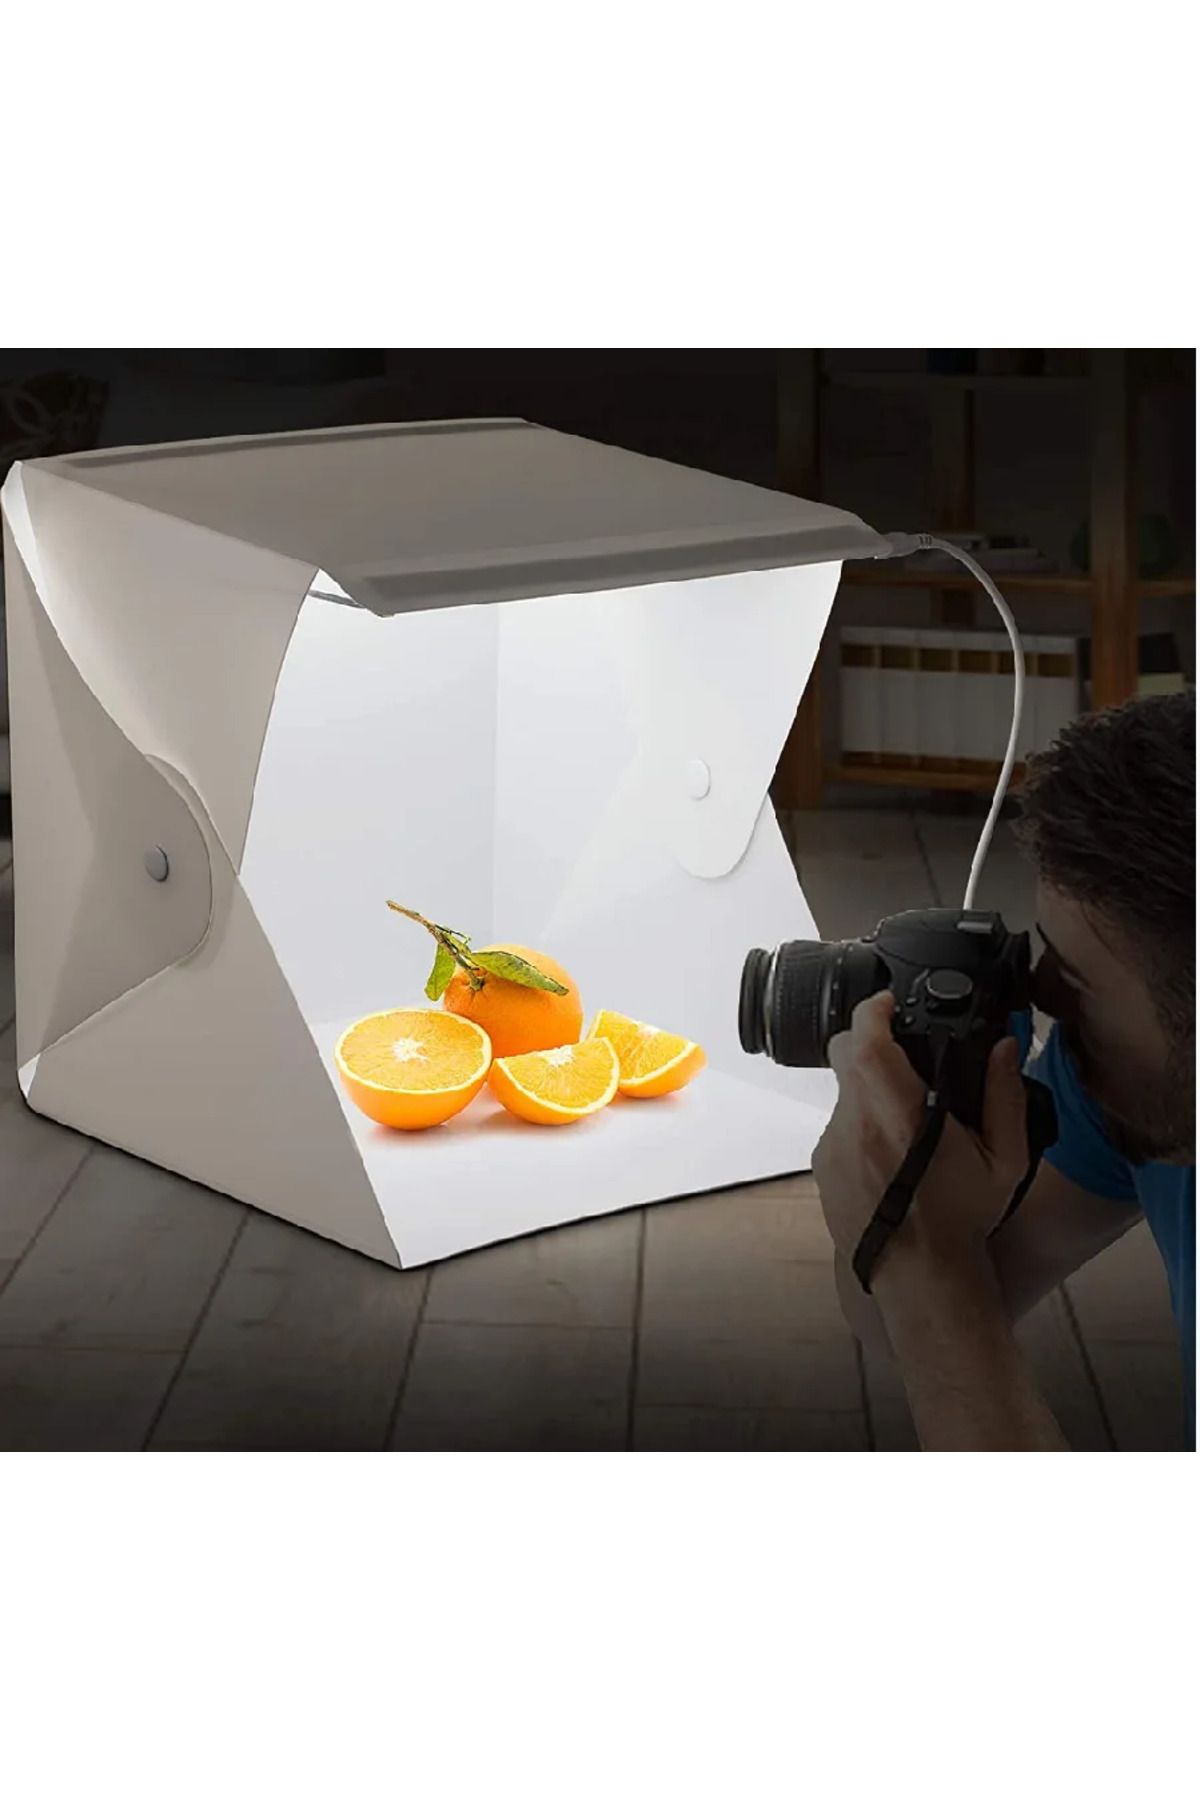 teknotrust Lensler ve Filtreler Stüdyo Led Işıklı Çekim Çadırı Mini Ürün Fotoğraf Çekim Çadırı 2 Fonlu Siyah B